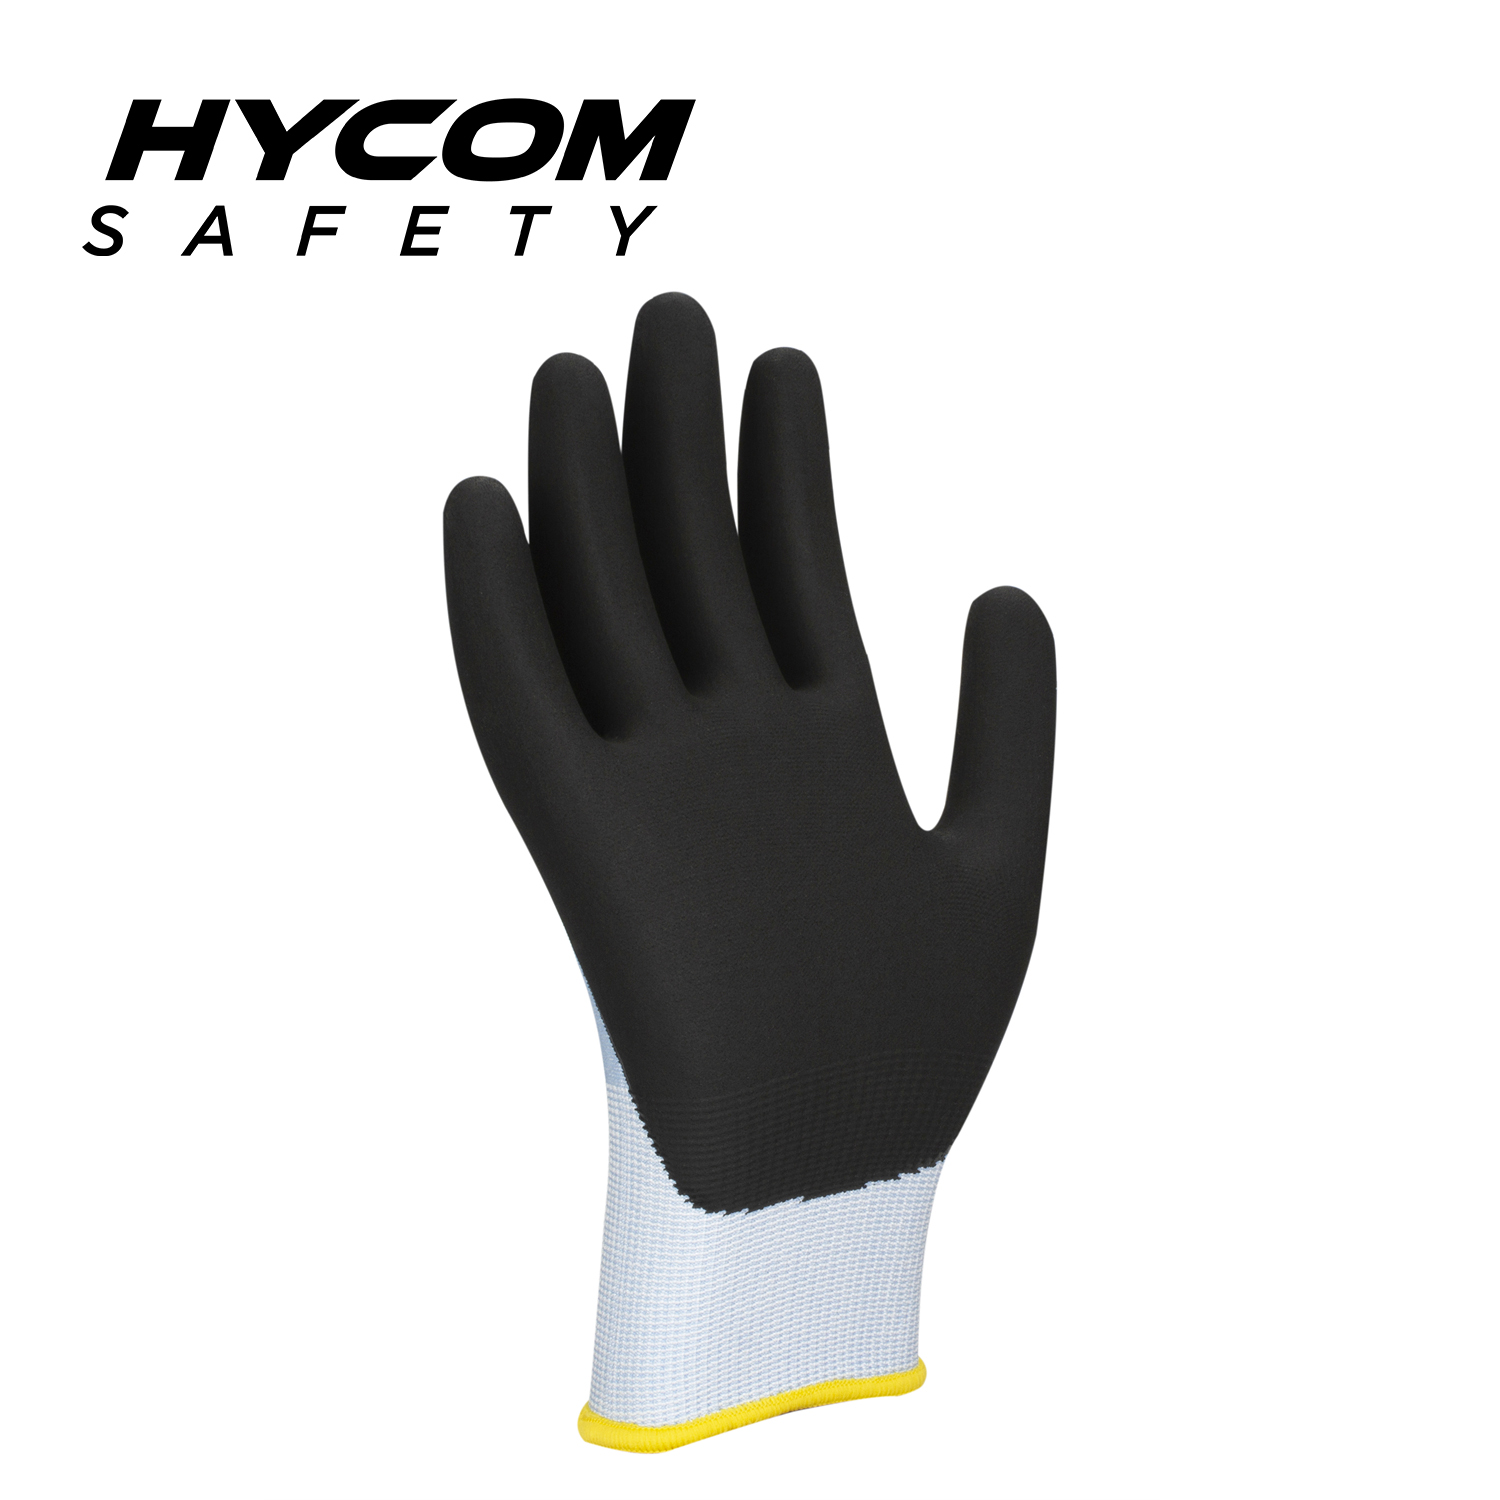 HYCOM 18G ANSI 2 Guante flexible resistente a cortes con recubrimiento de nitrilo en la palma Guantes de seguridad súper delgados